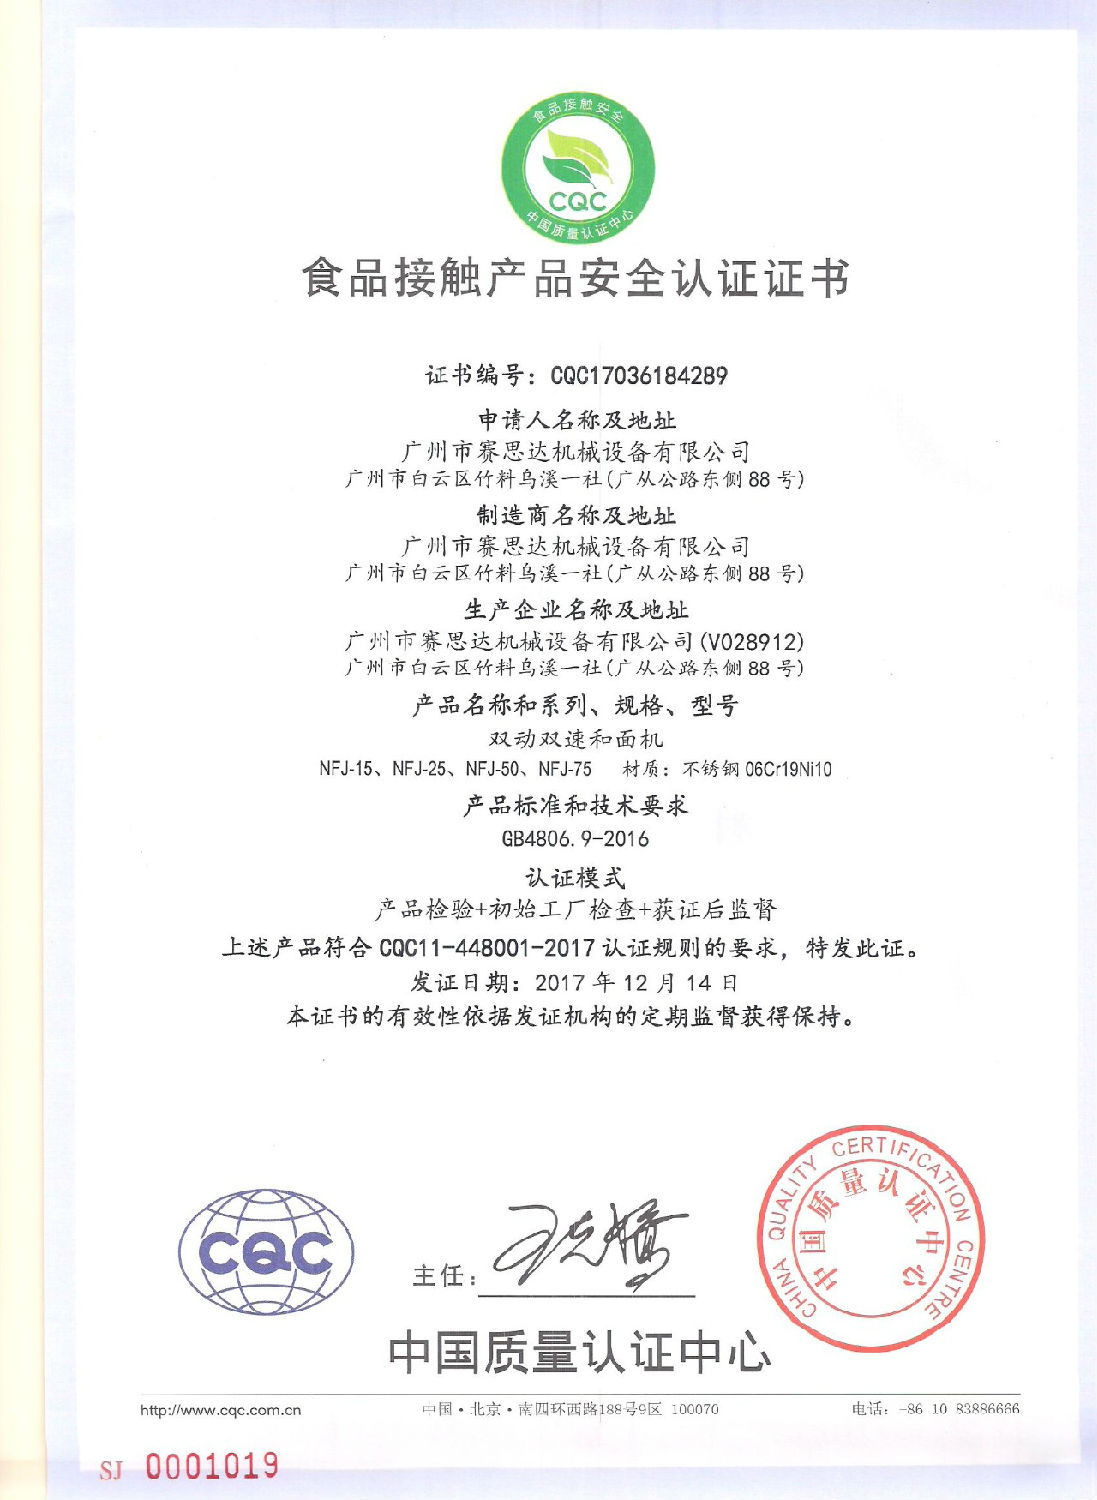 凯时k8荣获CQC食品接触产品安全认证